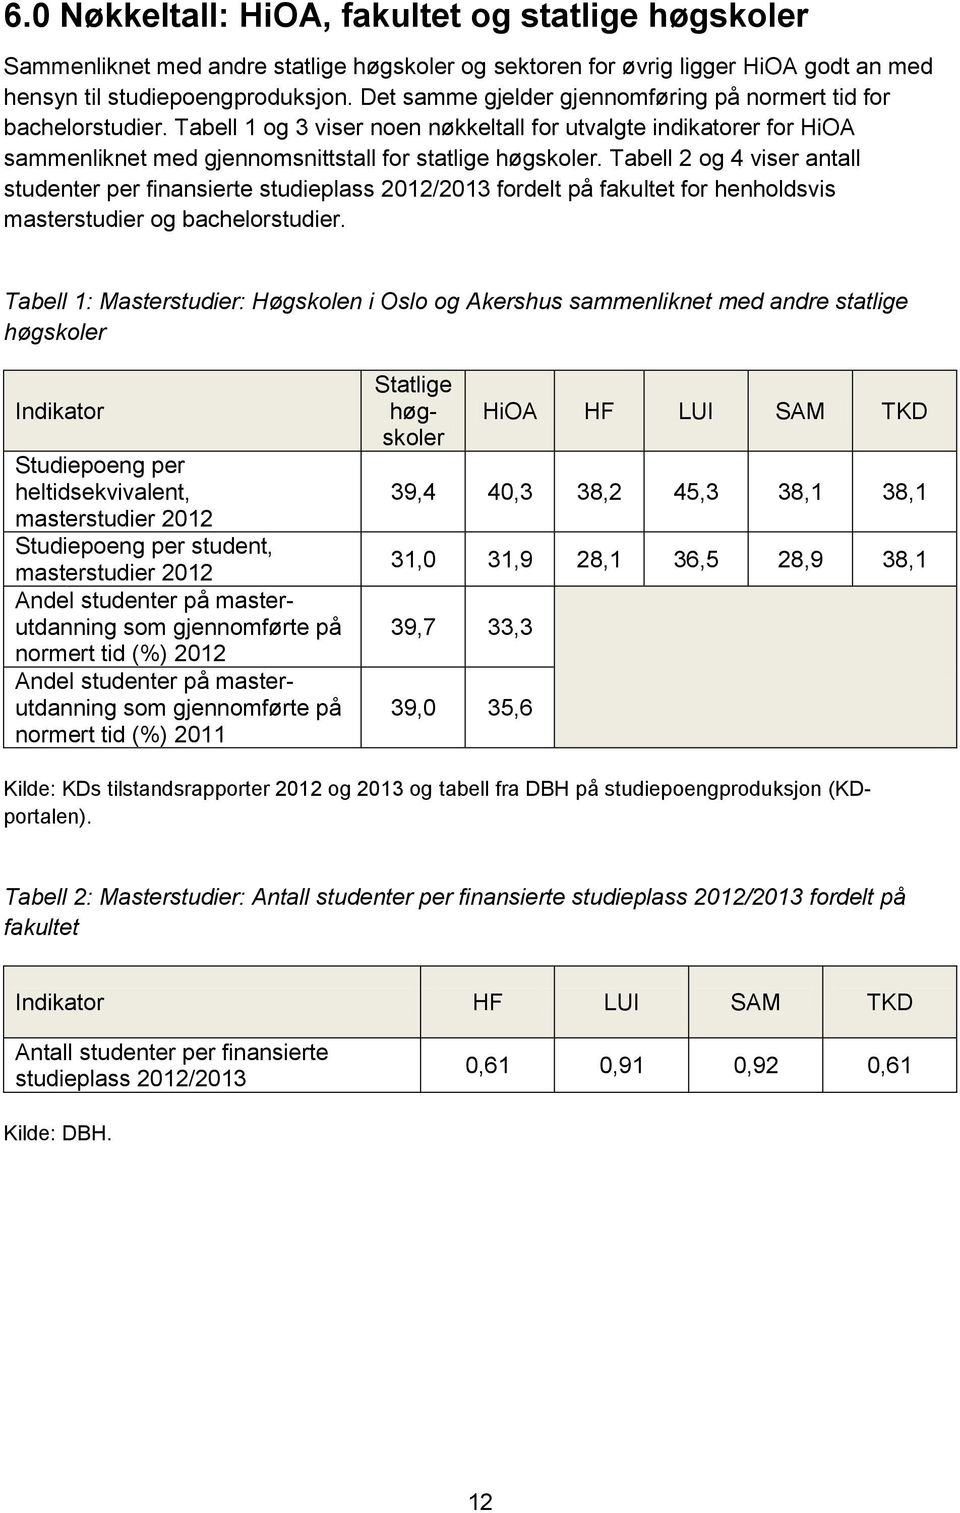 Tabell 2 og 4 viser antall studenter per finansierte studieplass 2012/2013 fordelt på fakultet for henholdsvis masterstudier og bachelorstudier.